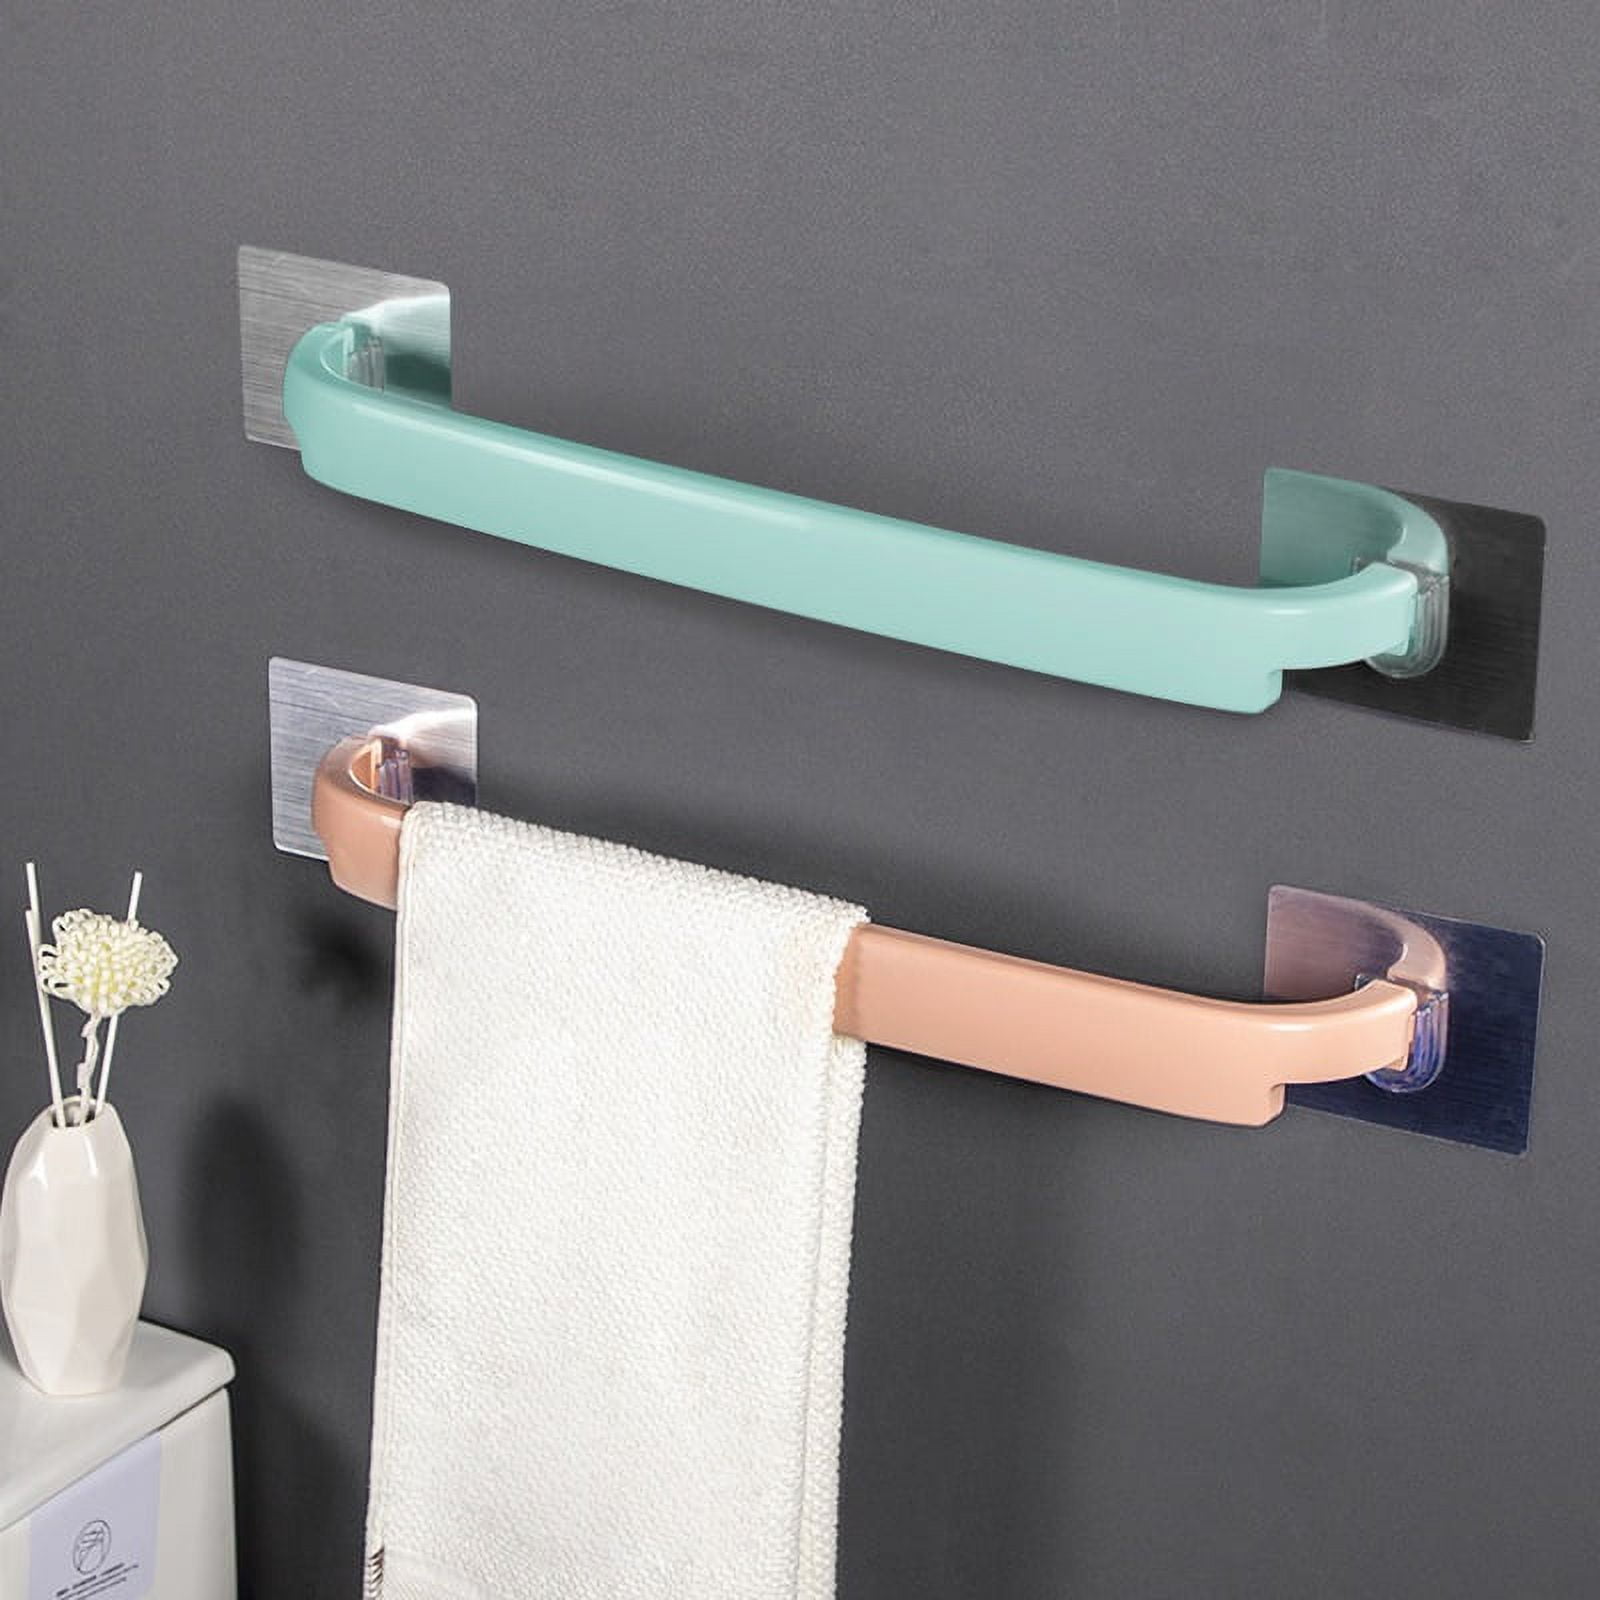 Interdesign 20.5 cm Forma Self Adhesive Towel Bar 67580